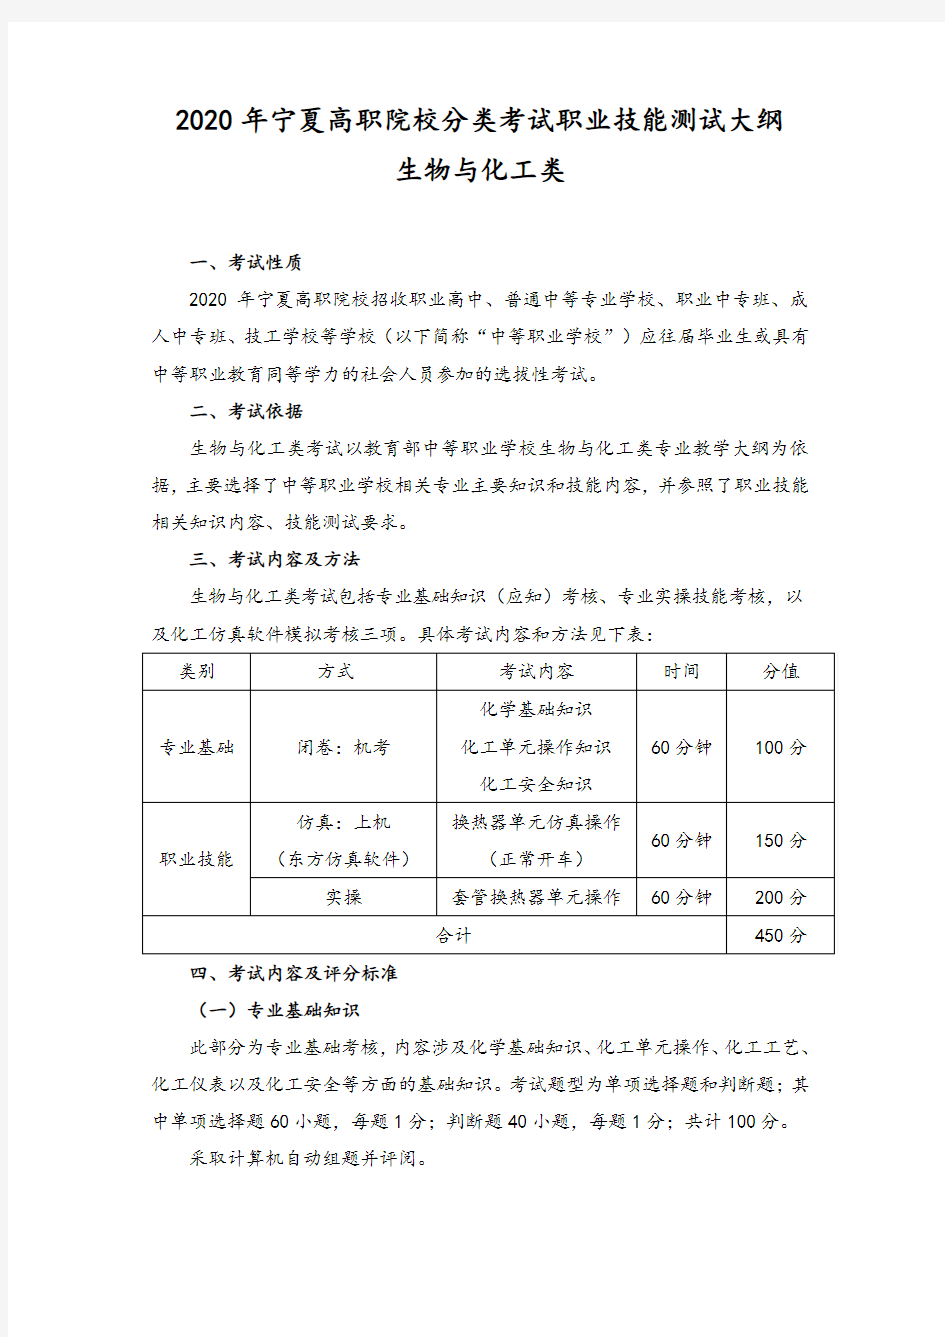 2020年宁夏高职院校分类考试职业技能测试大纲